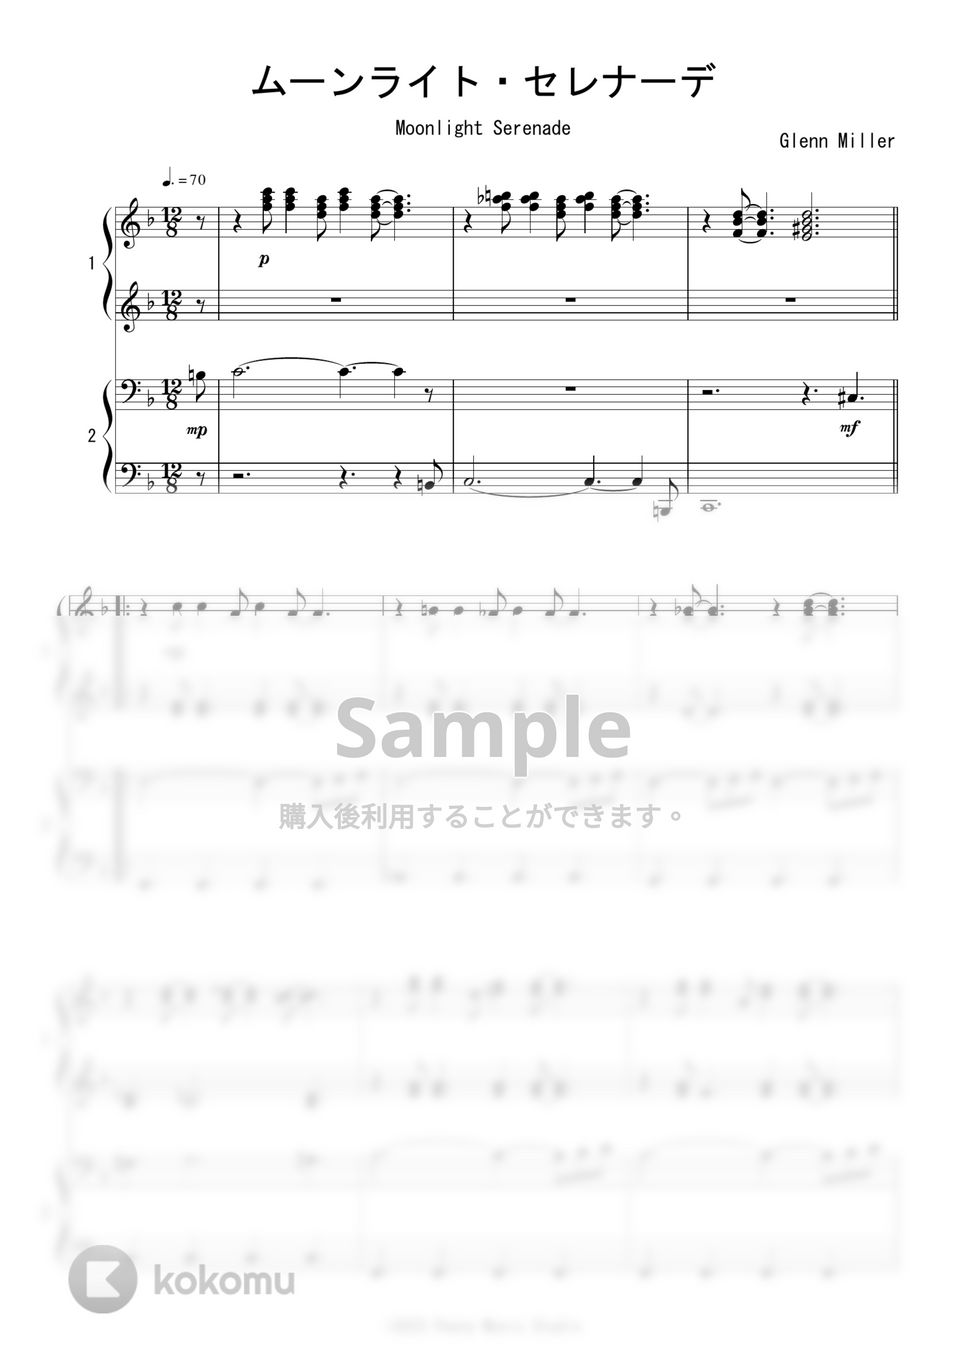 グレン・ミラー - ムーンライト・セレナーデ (ピアノ連弾) by Peony